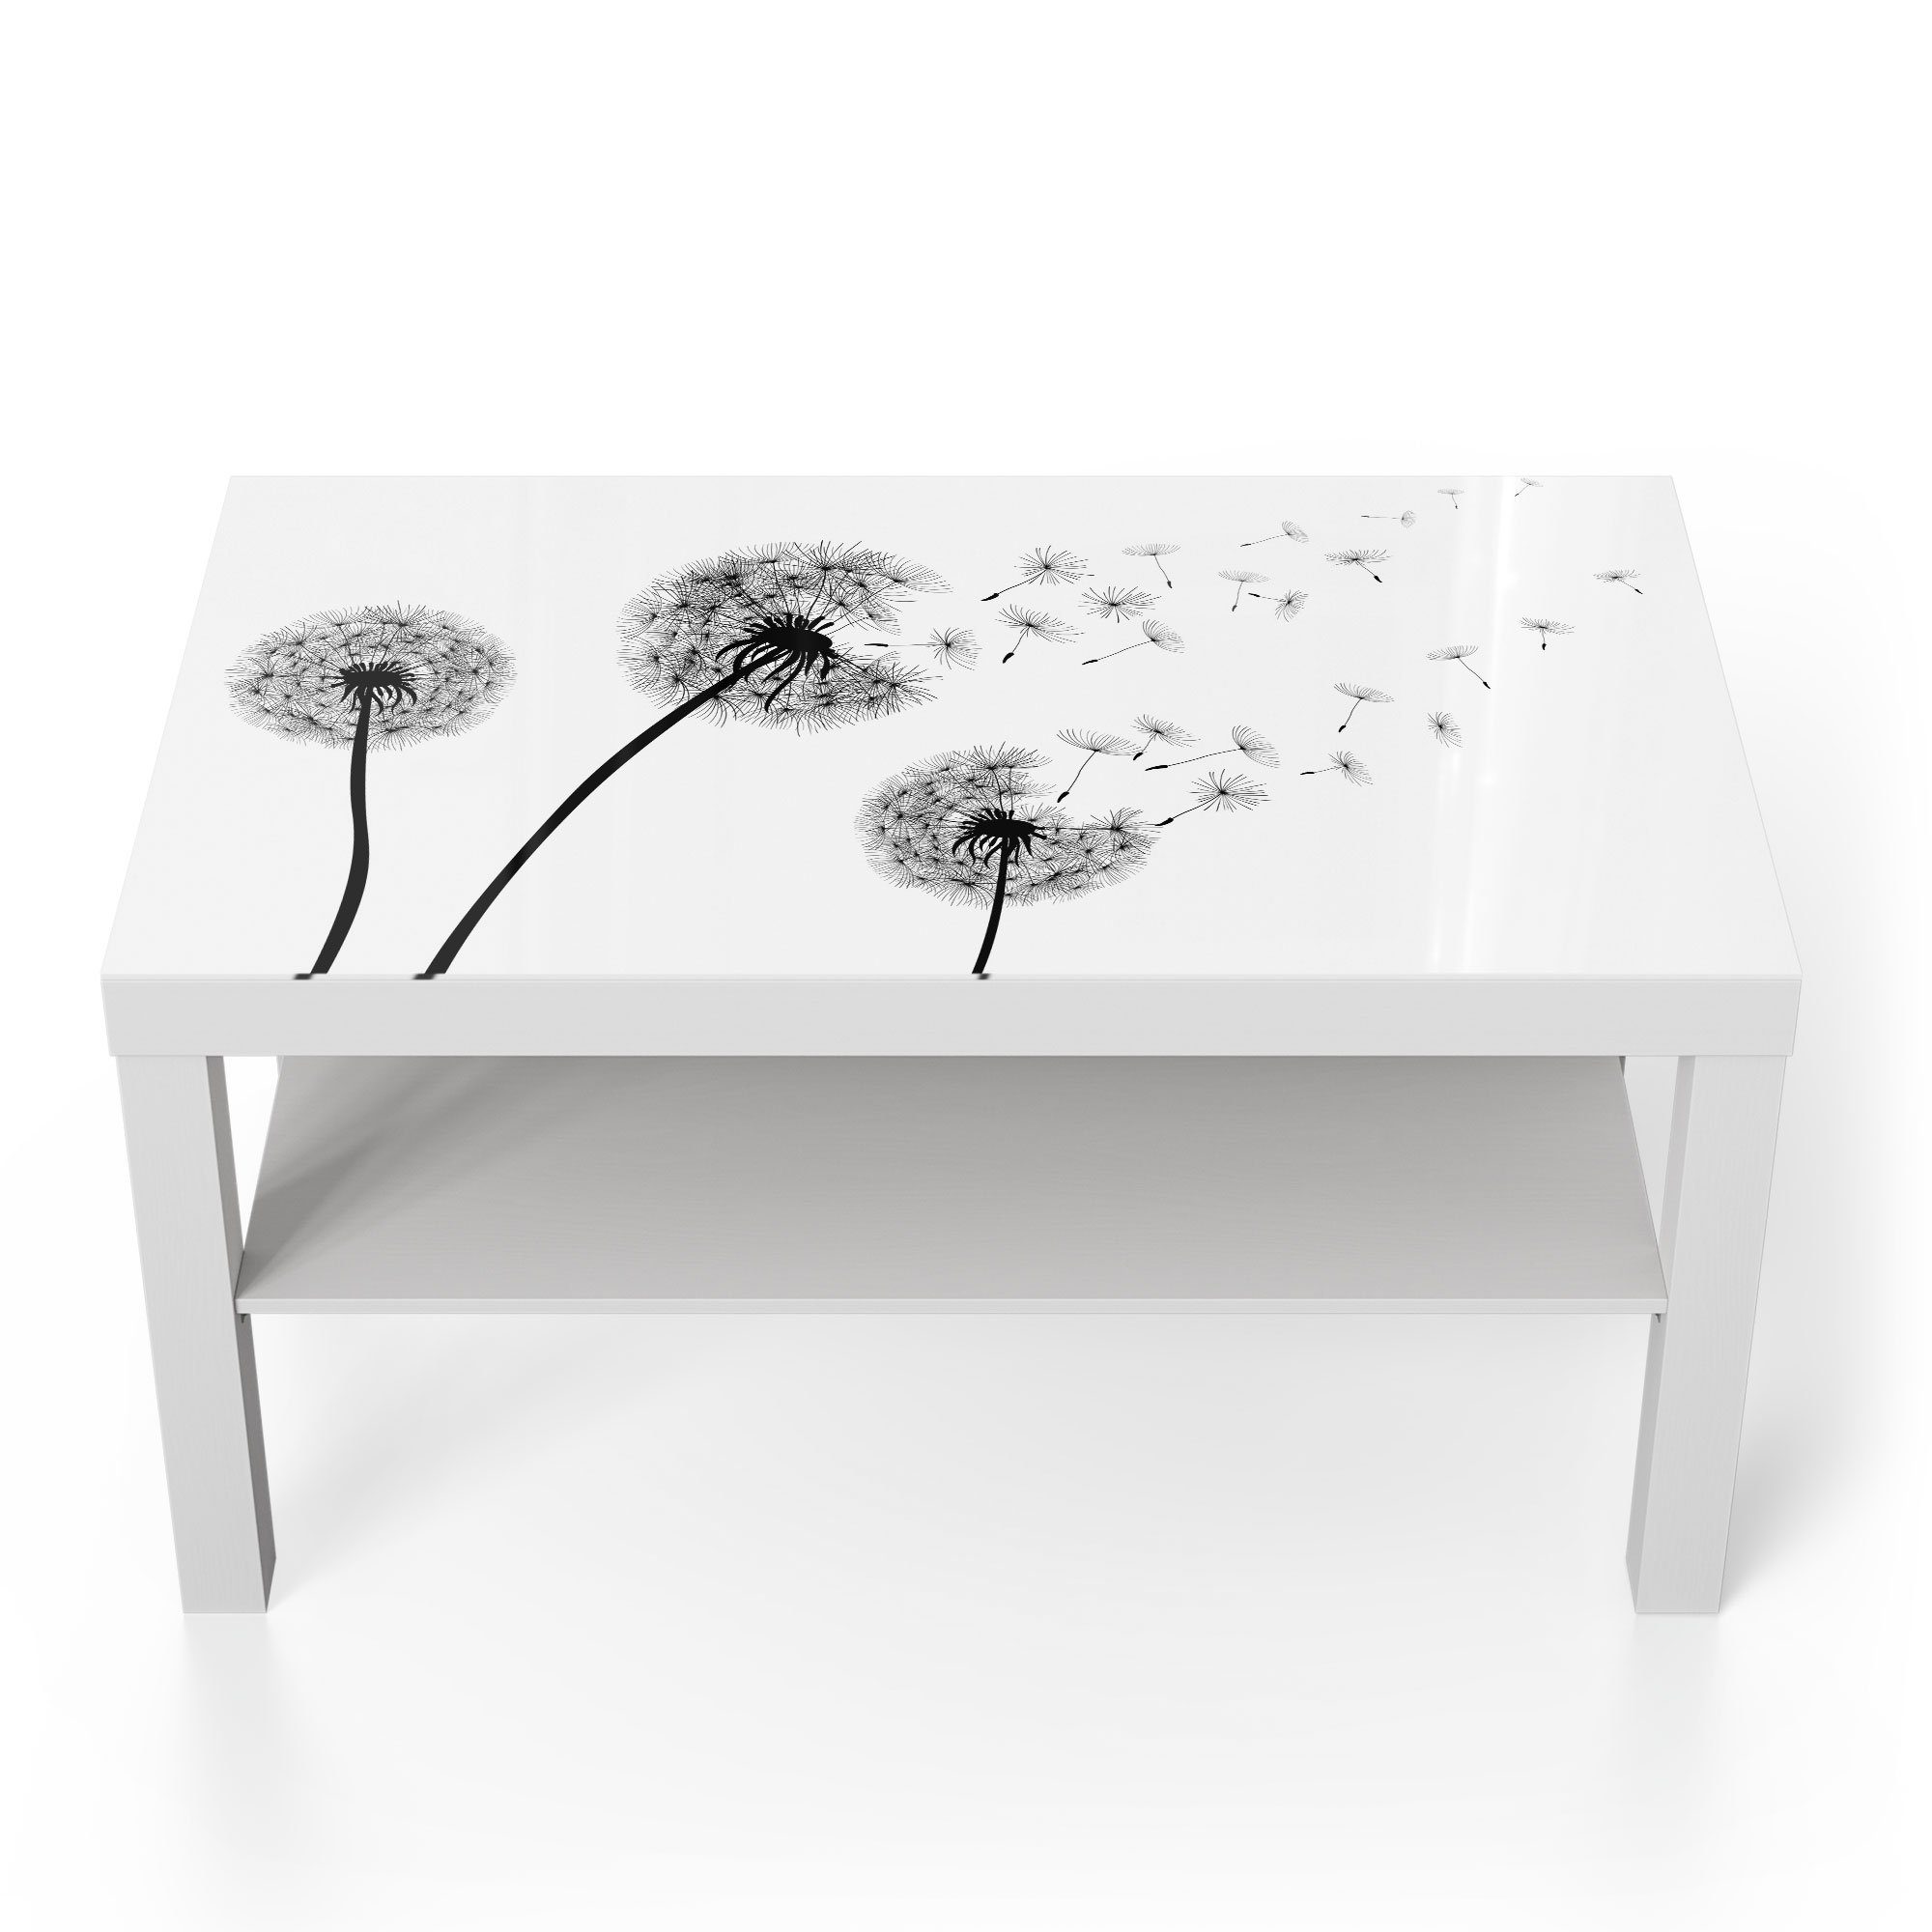 DEQORI Couchtisch 'Schwarze Pusteblumen', Glas Beistelltisch Glastisch modern Weiß